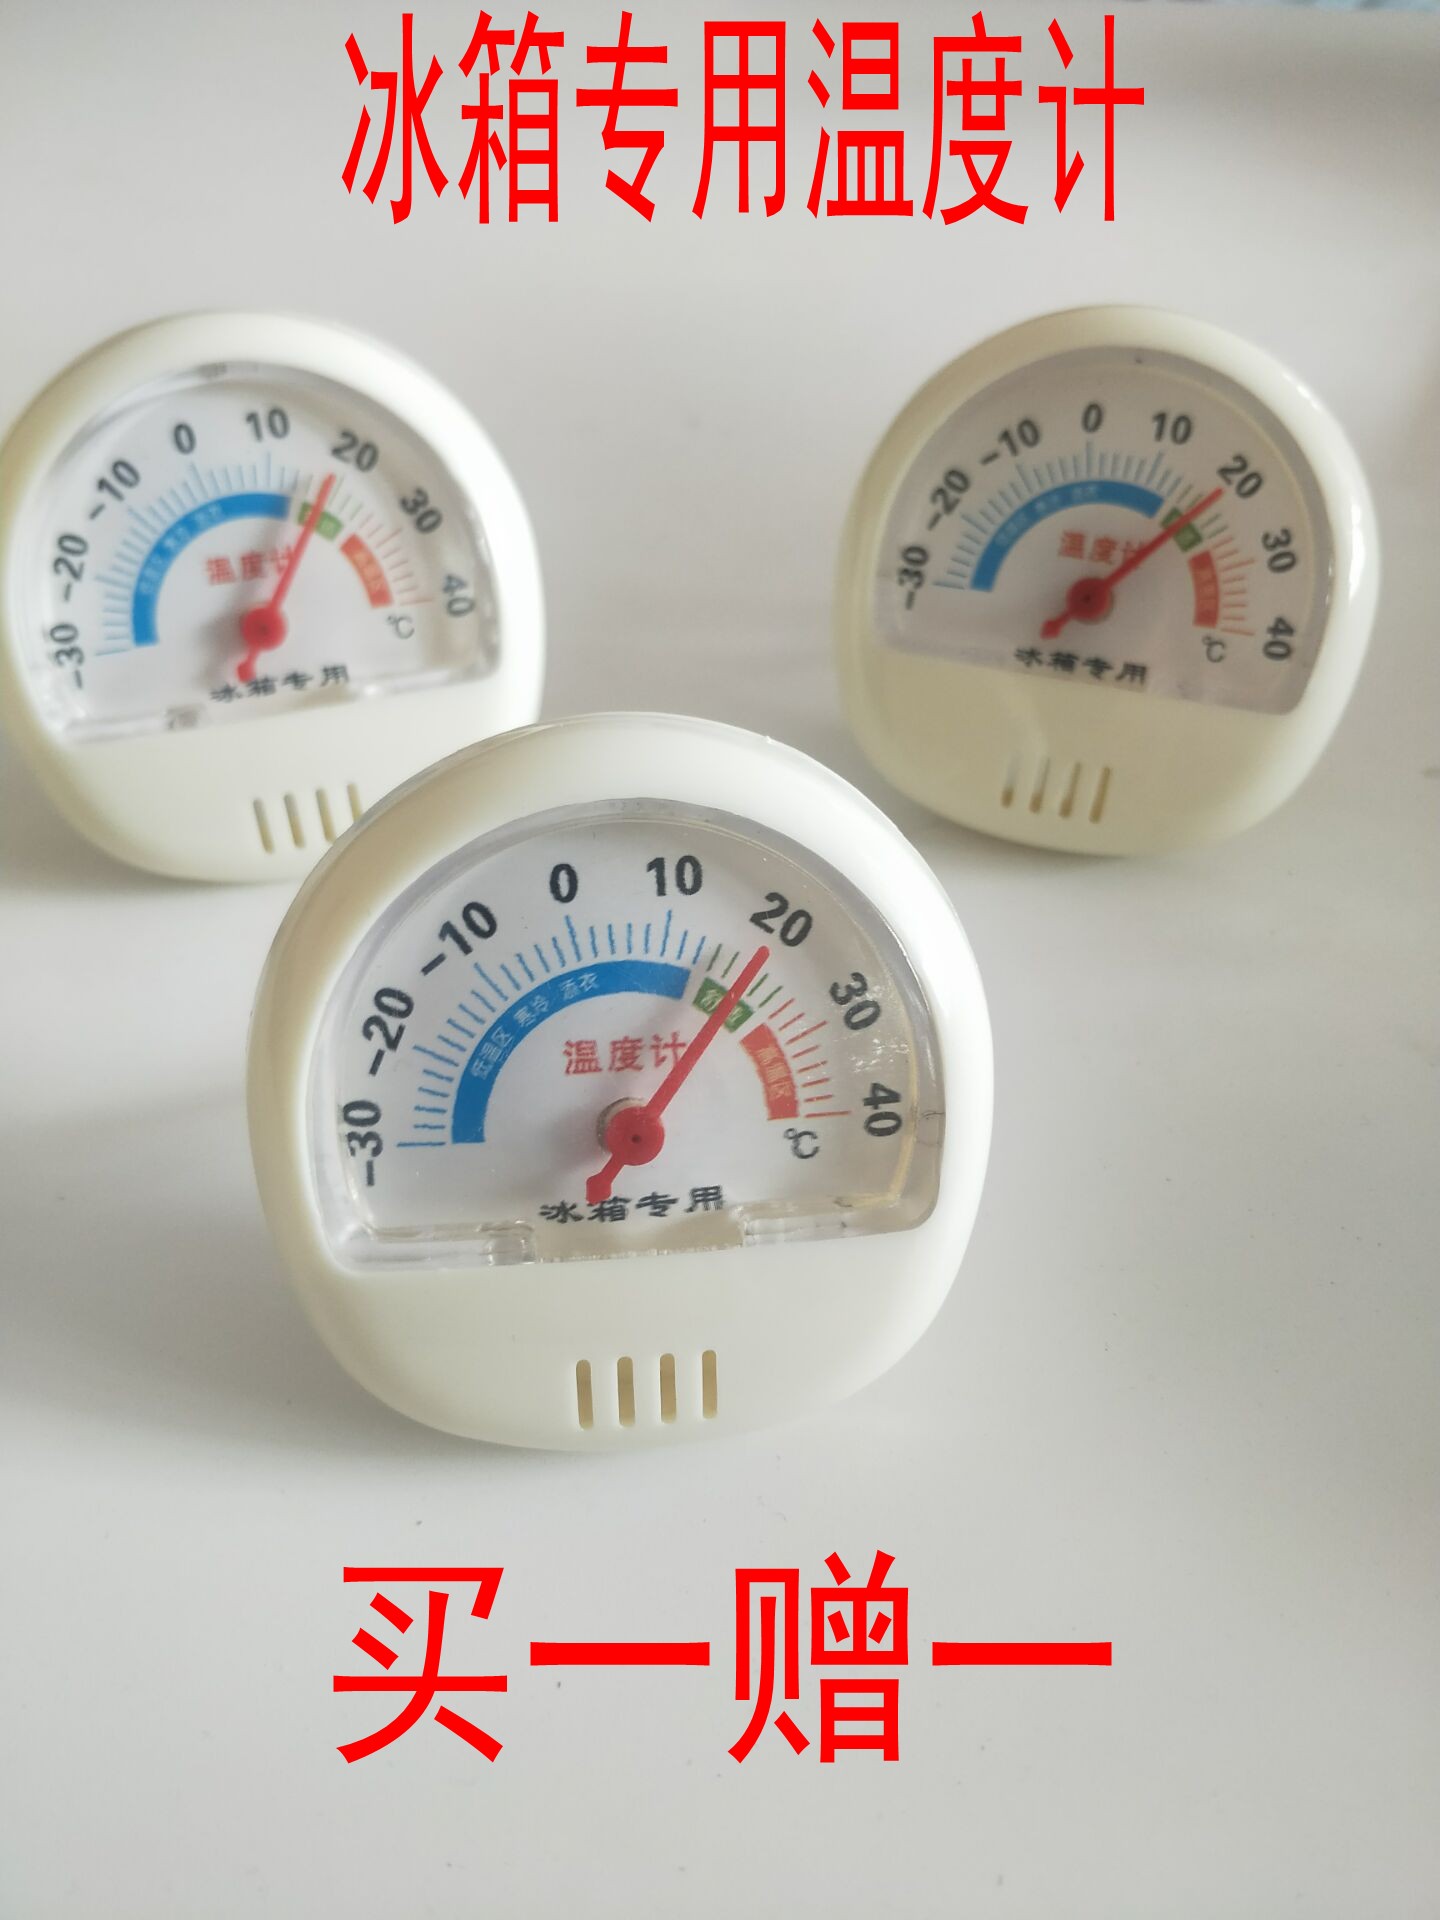 冰箱专用温度计 迷你温度计家用 可挂医用冰箱温度计 冰箱温度表